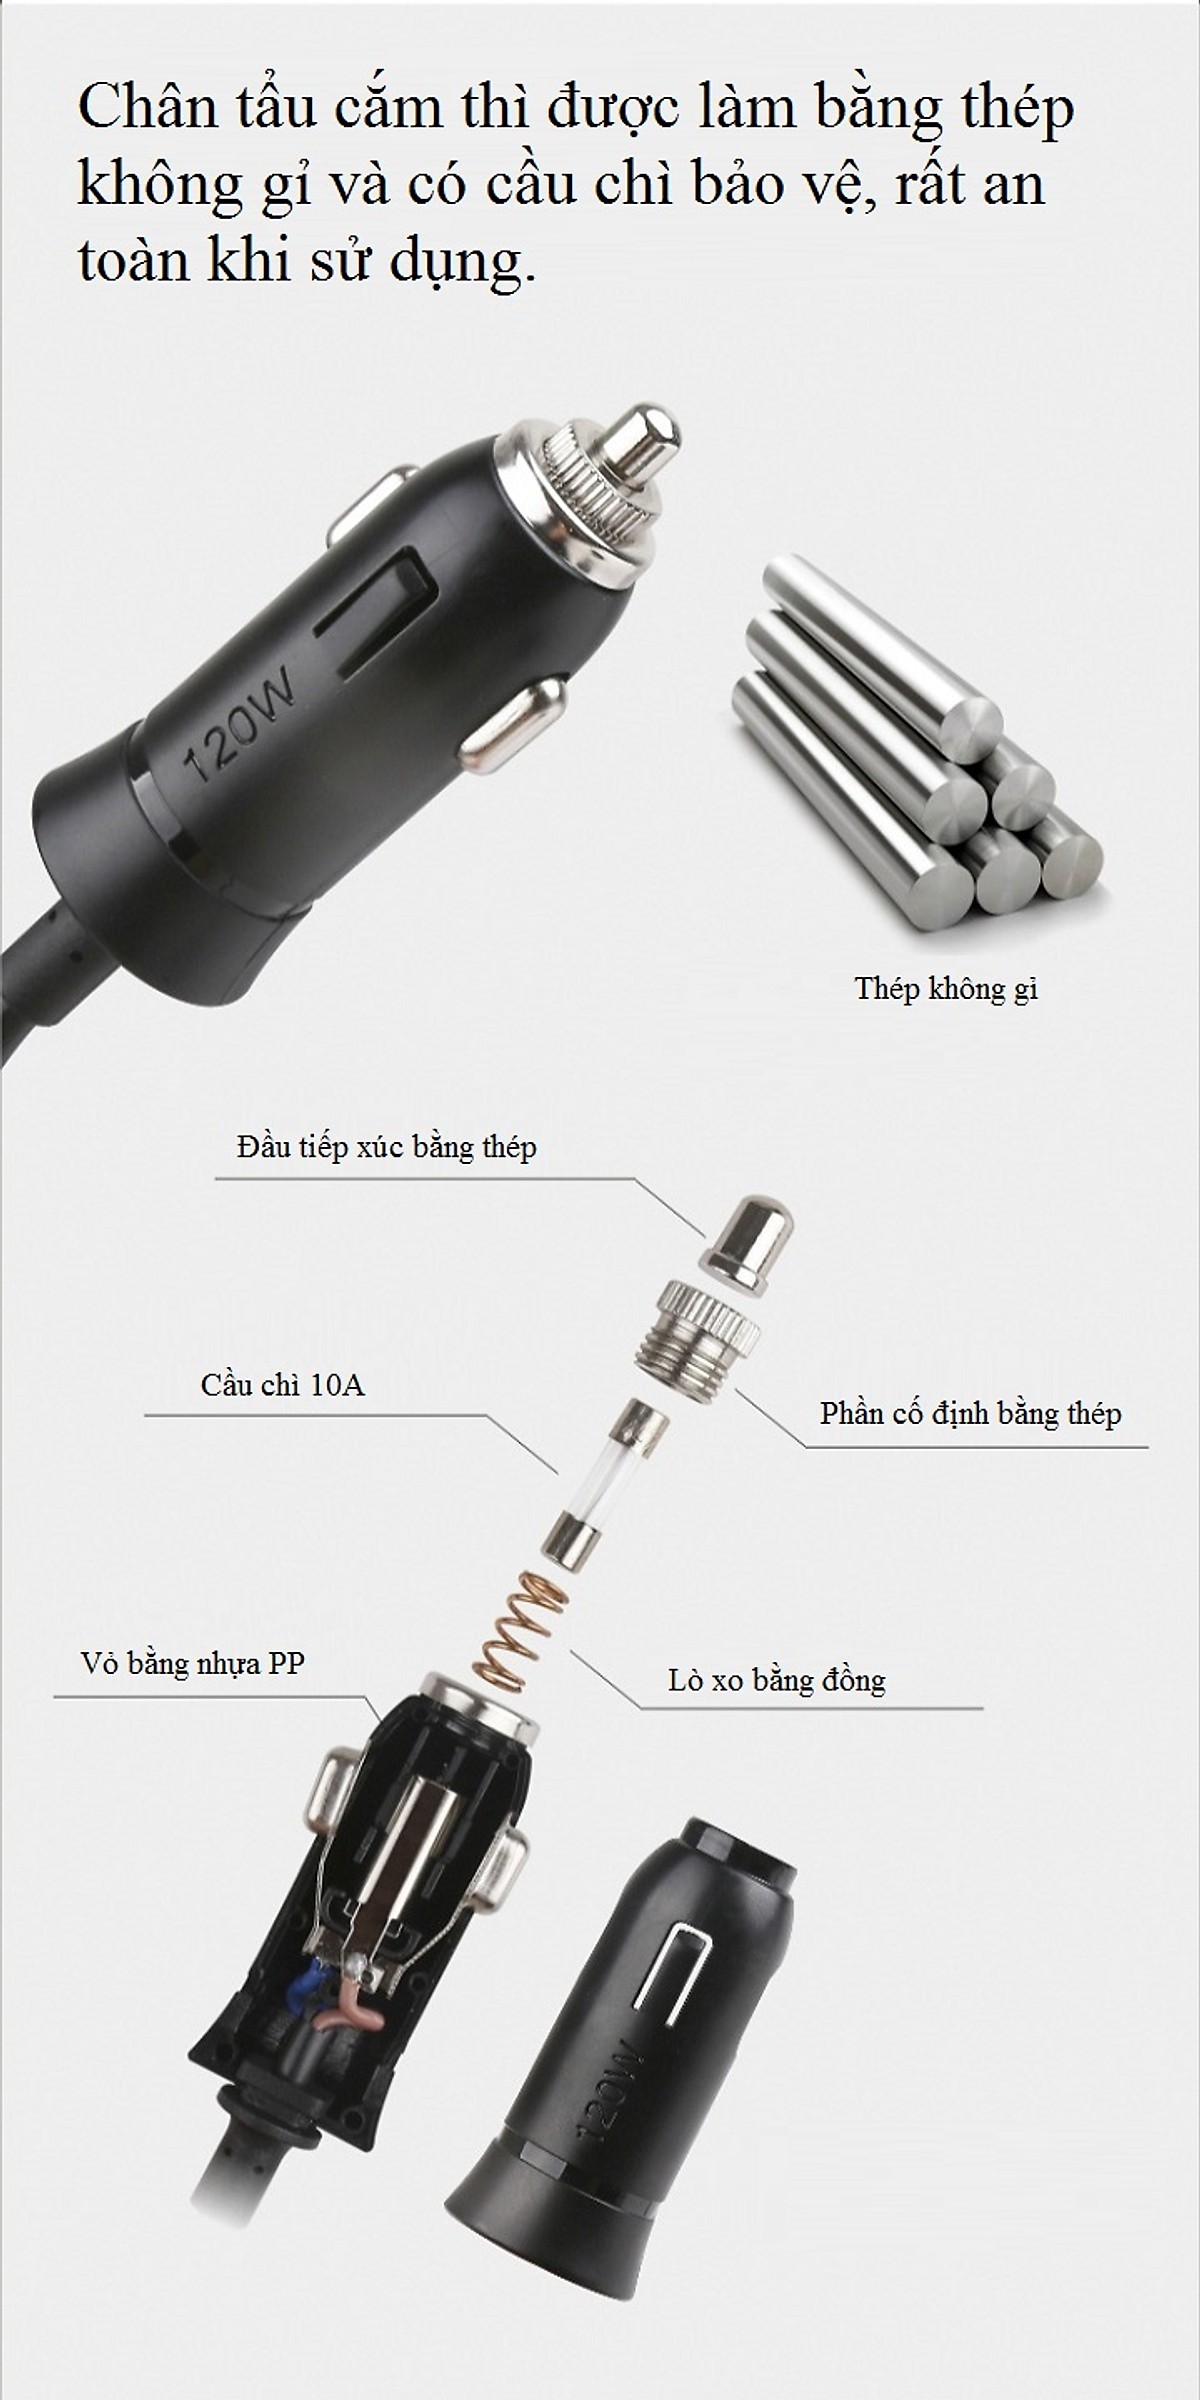 Bộ chia tẩu sạc trên ô tô 558A- 3 TẨU CẮM, 2 CỔNG USB, 3 CÔNG TẮC TẮT/ MỞ RIÊNG (Tặng đèn pin bóp tay mini- Màu ngẫu nhiên)